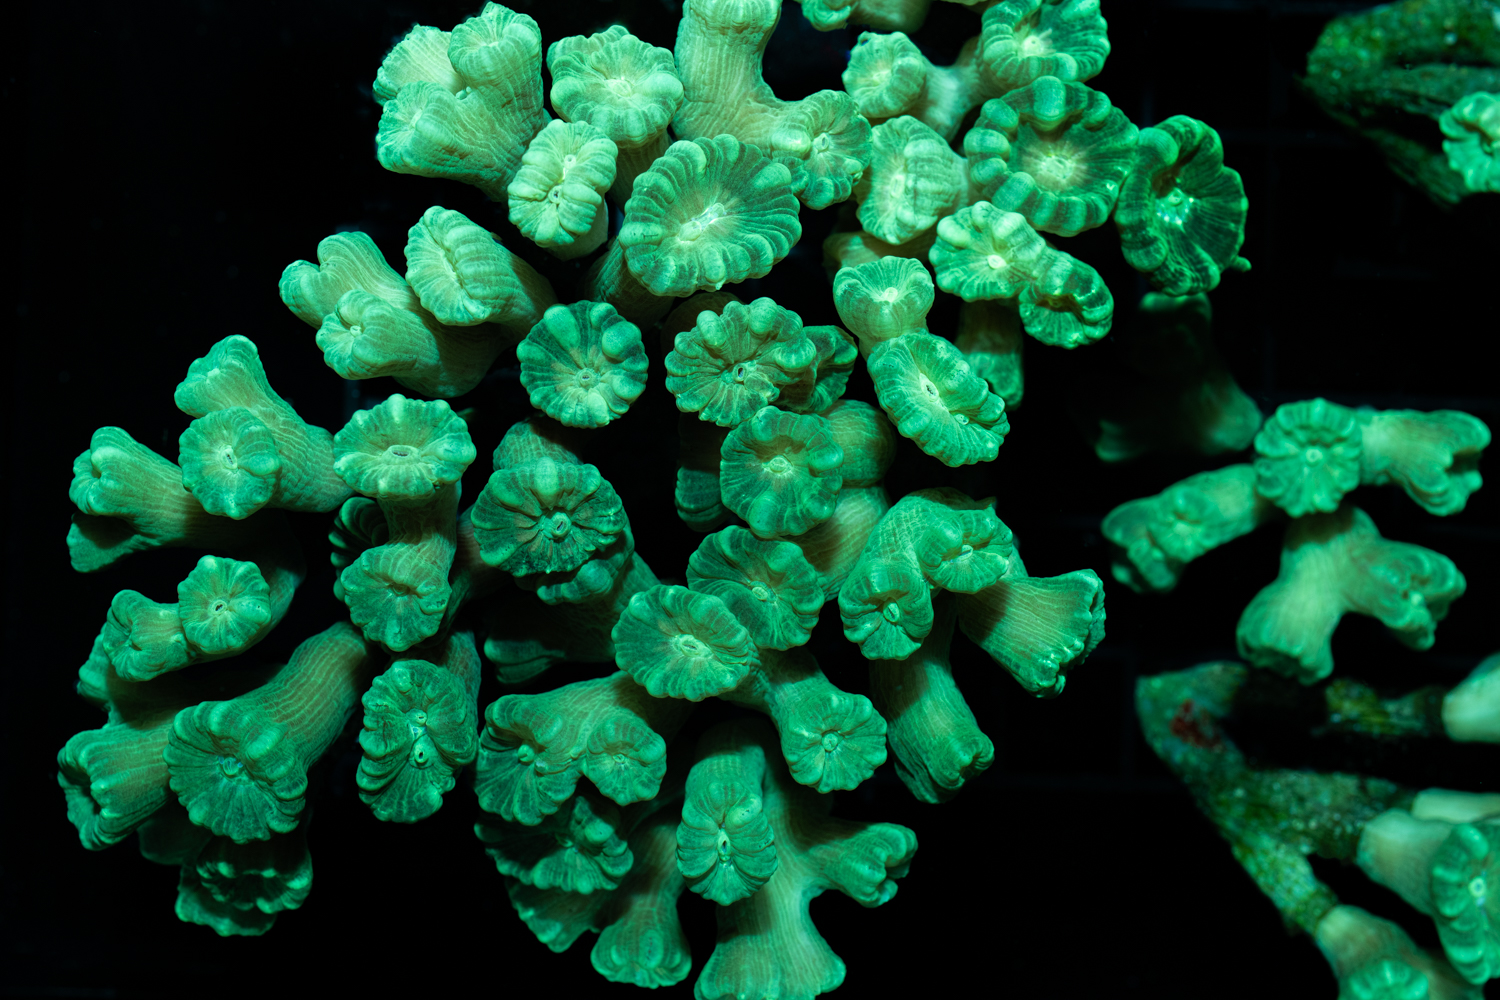 Reefapalooza 2019 New York: Corals Part I